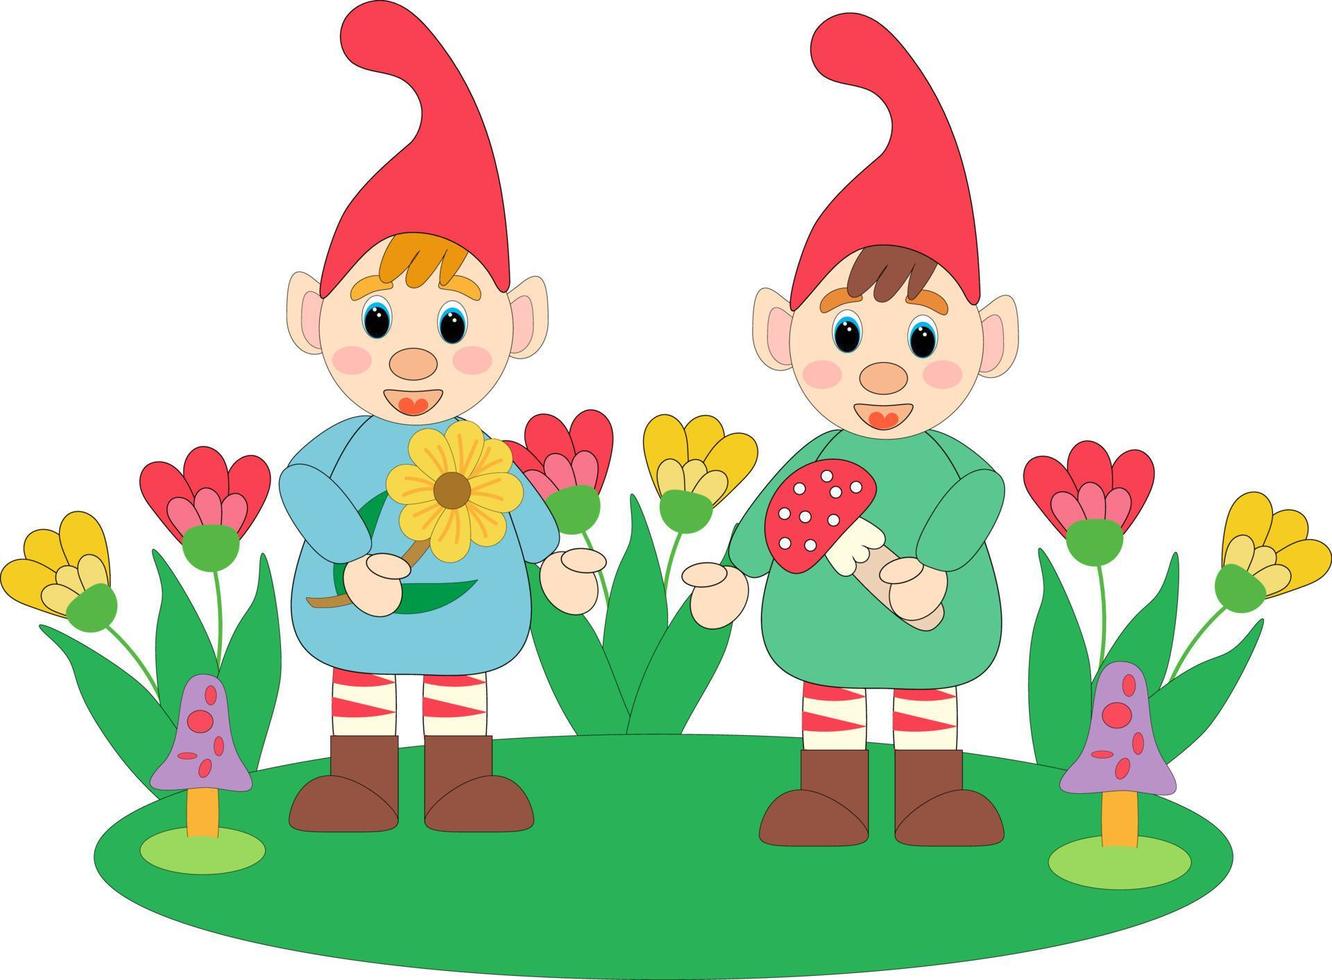 Märchen fantastische Gnome. Gartenzwerge Cartoon Reihe von lustigen Illustrationen. flache vektorillustration. vektor